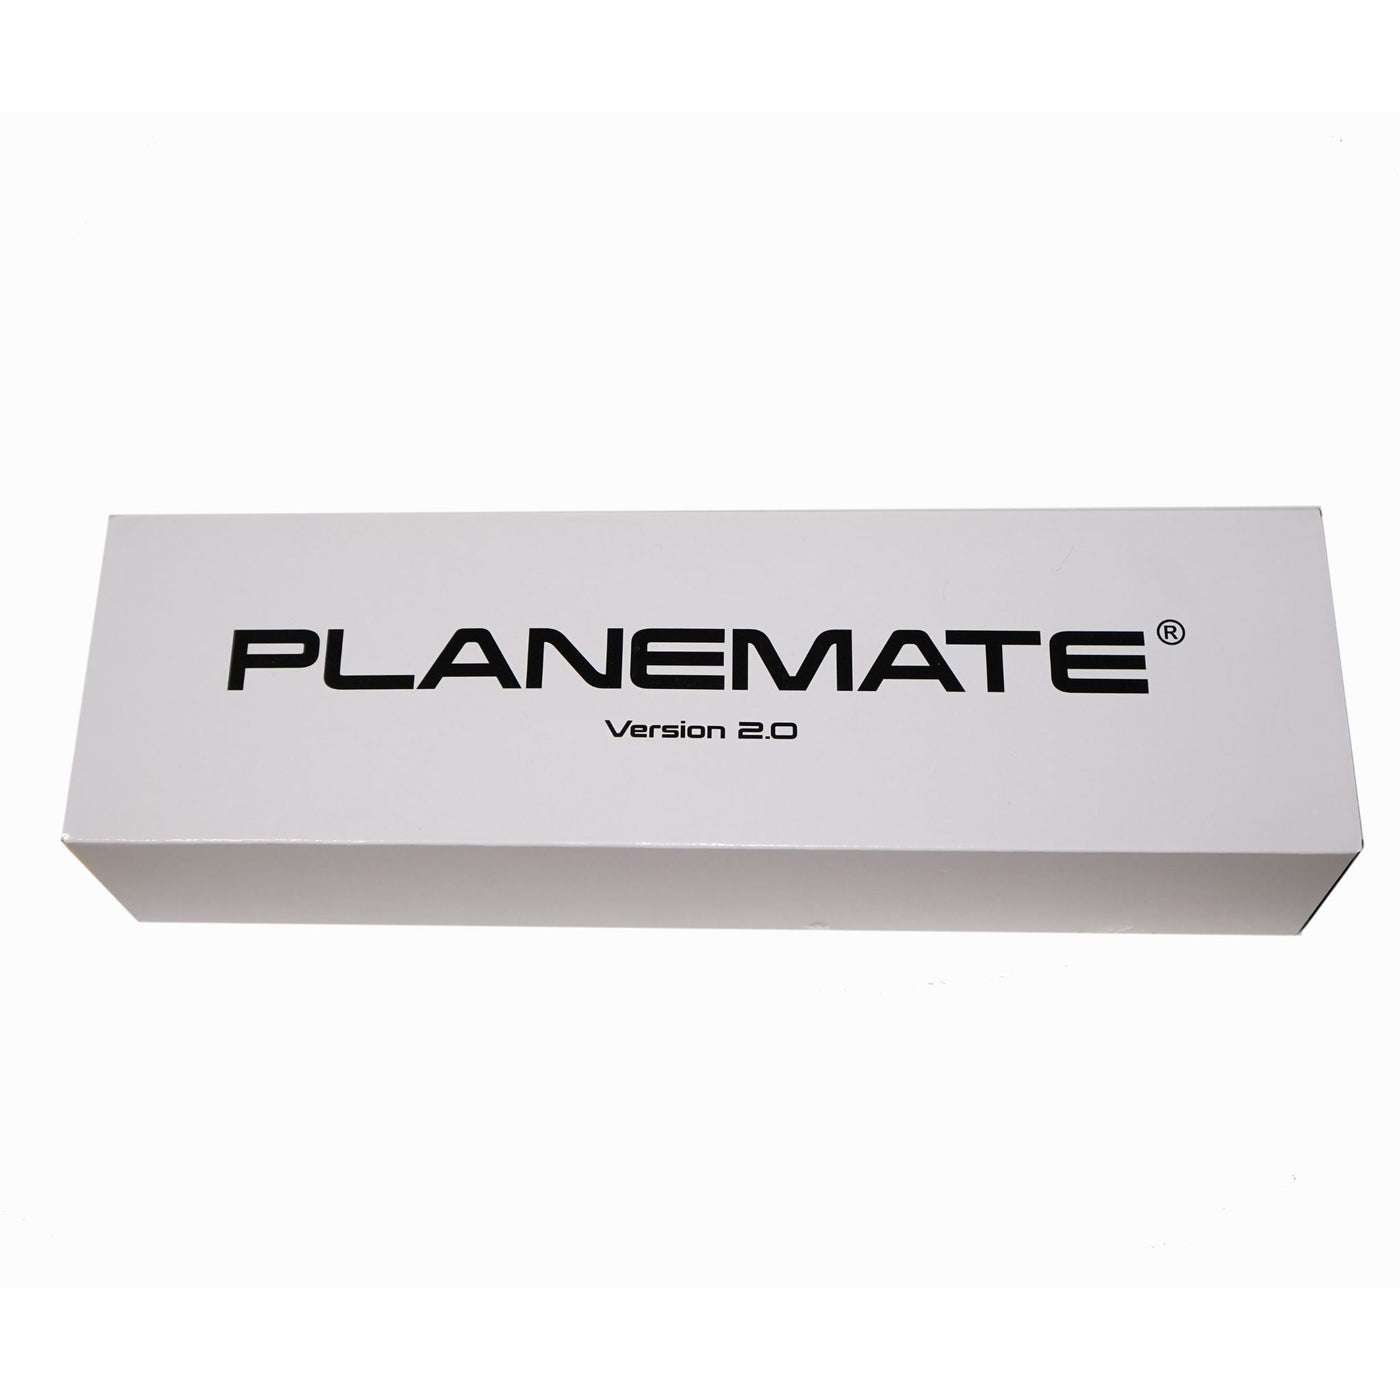 PlaneMate "Open Box"